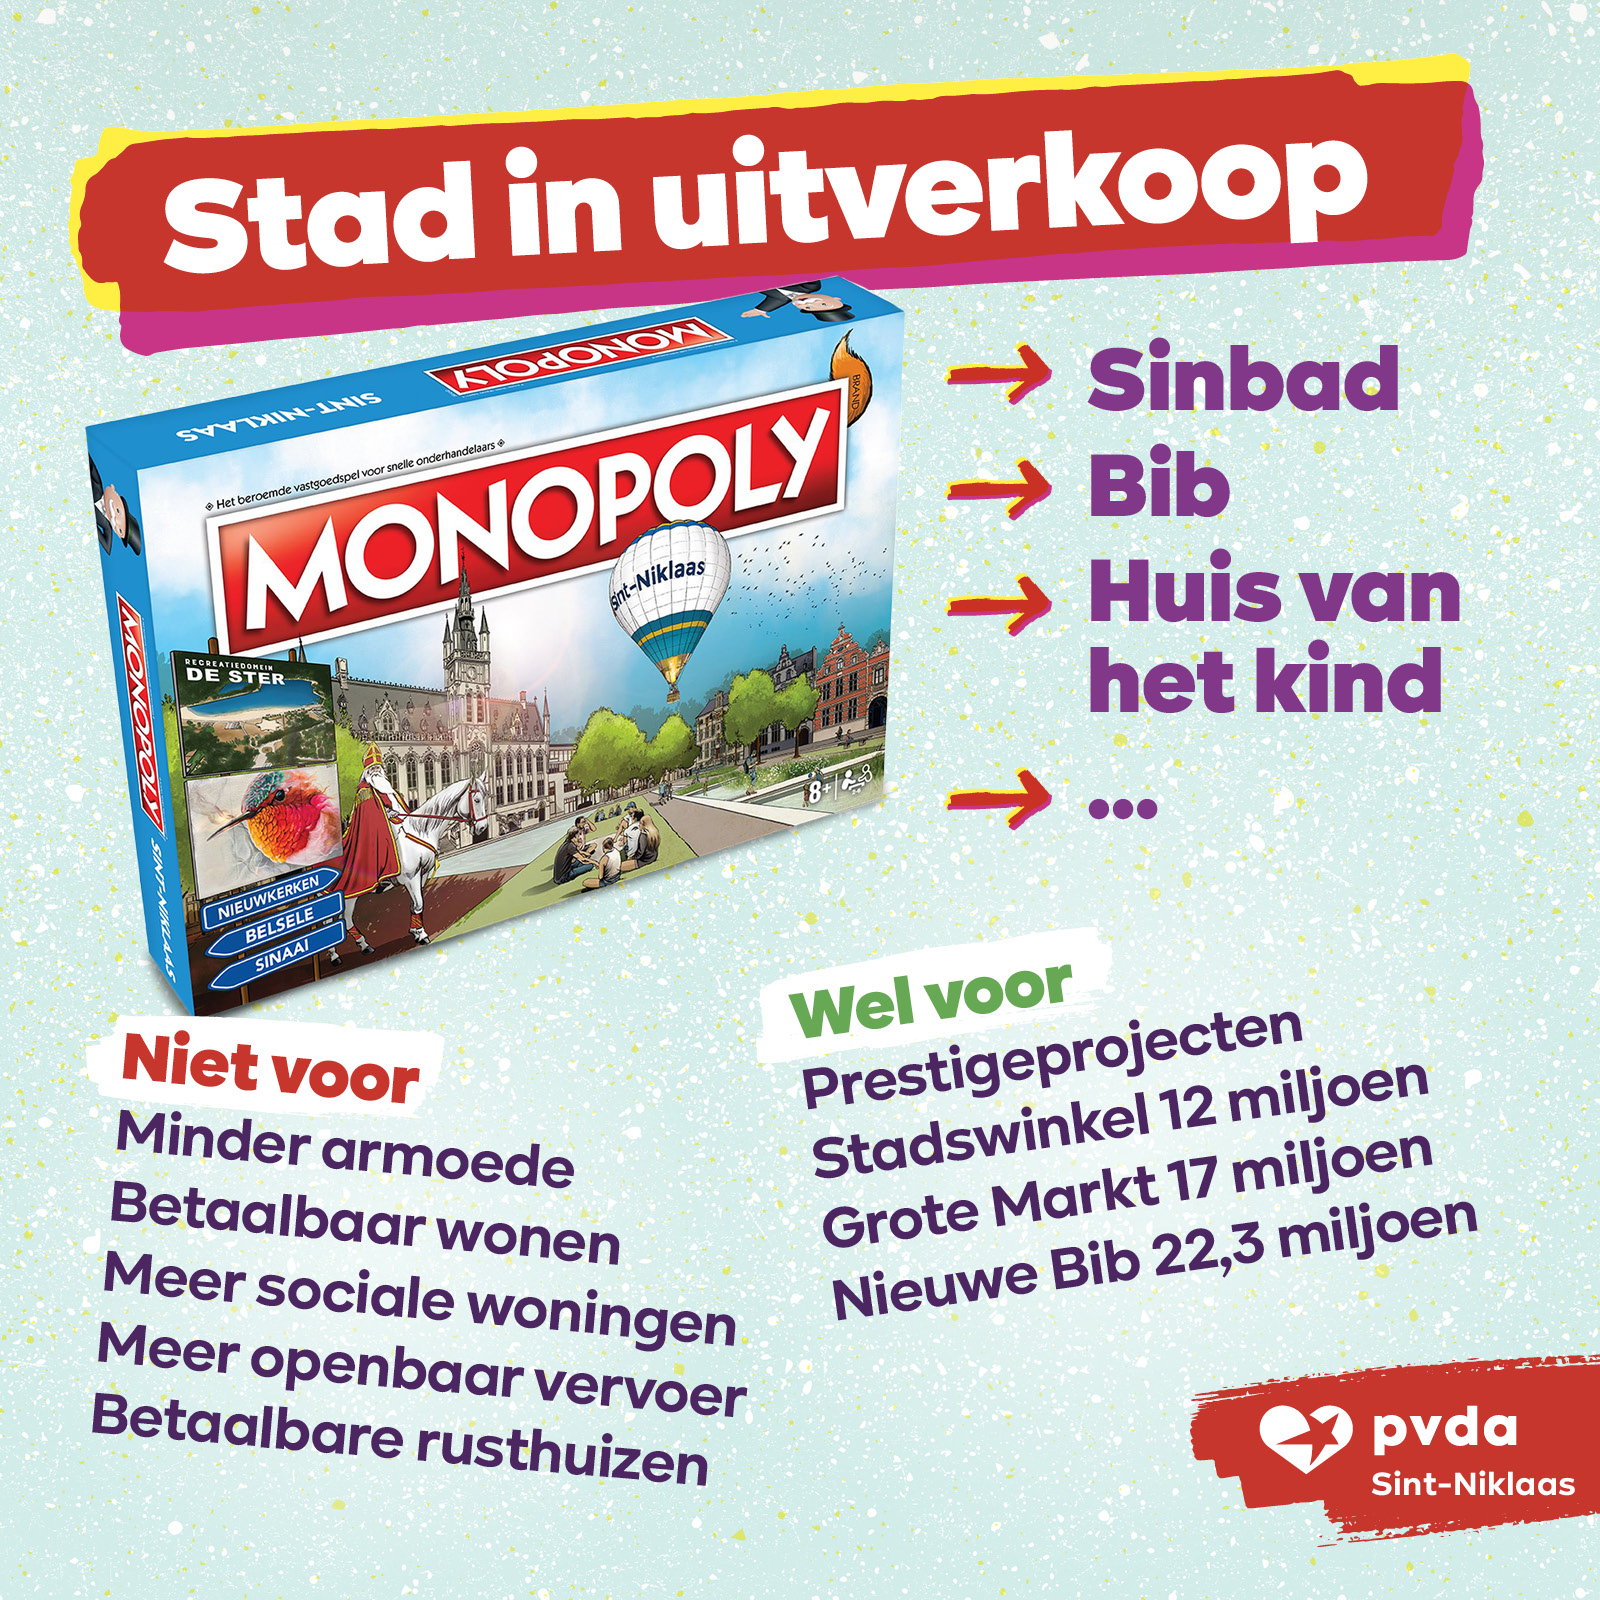 Stadsbestuur Sint-Niklaas speelt monopoly: te dure prestigeprojecten en verkoop stadseigendommen